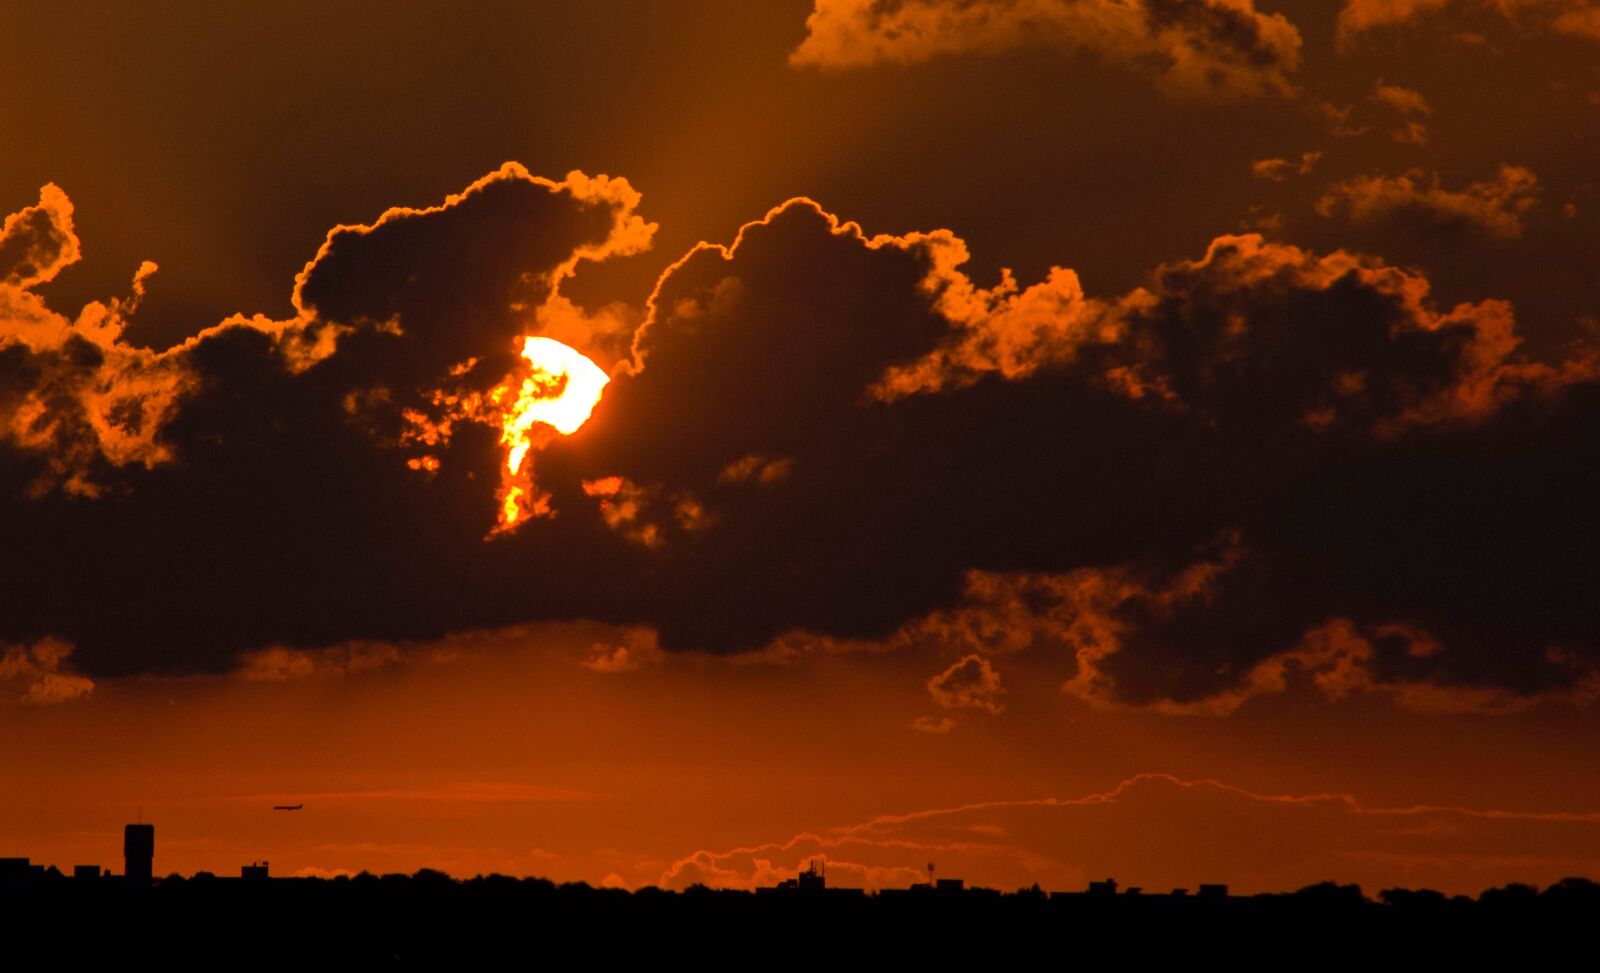 Pentax K-5 IIs sample photo. Evening sky, sunset, afterglow photography